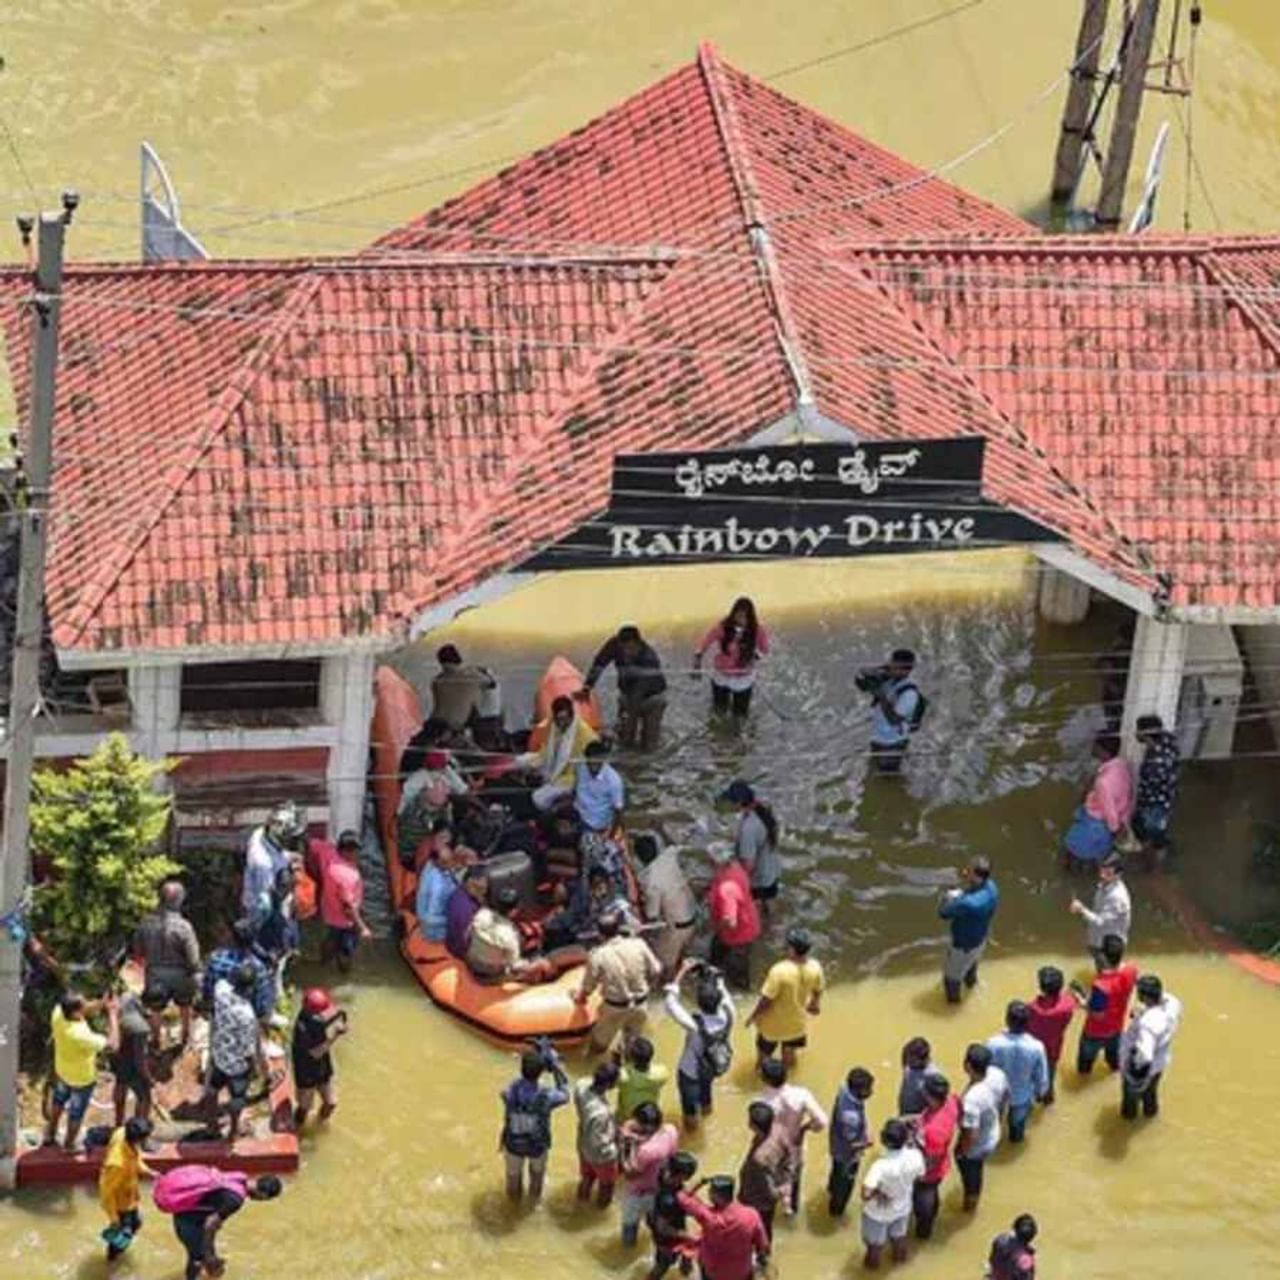 છેલ્લા કેટલાક દિવસથી ભારતનું આઈટી હબ કહેવાતા બેંગ્લોર શહેરમાં ભારે વરસાદને કારણે બધી જગ્યા પાણી ભરાયા છે. જેને કારણે ત્યાંનું જનજીવન અસ્તવ્યસ્ત થયું છે.